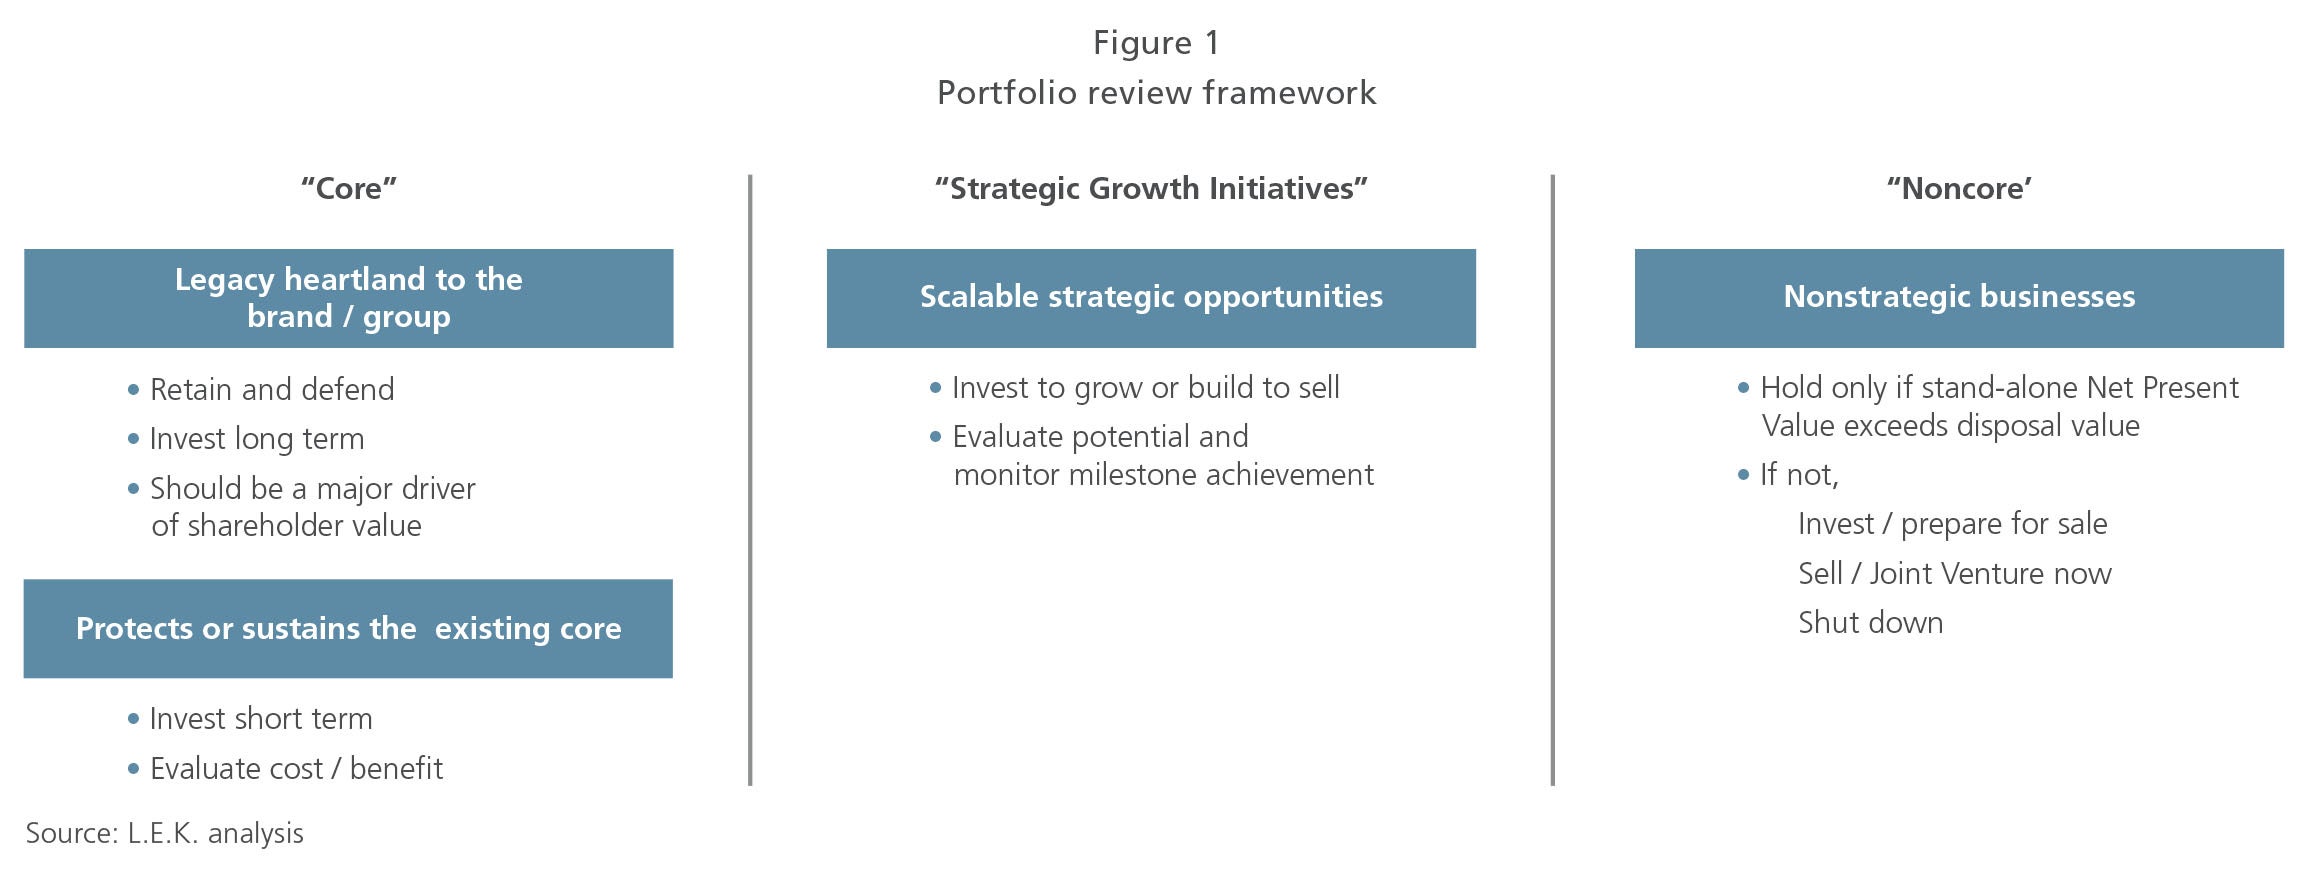 portfolio review framework